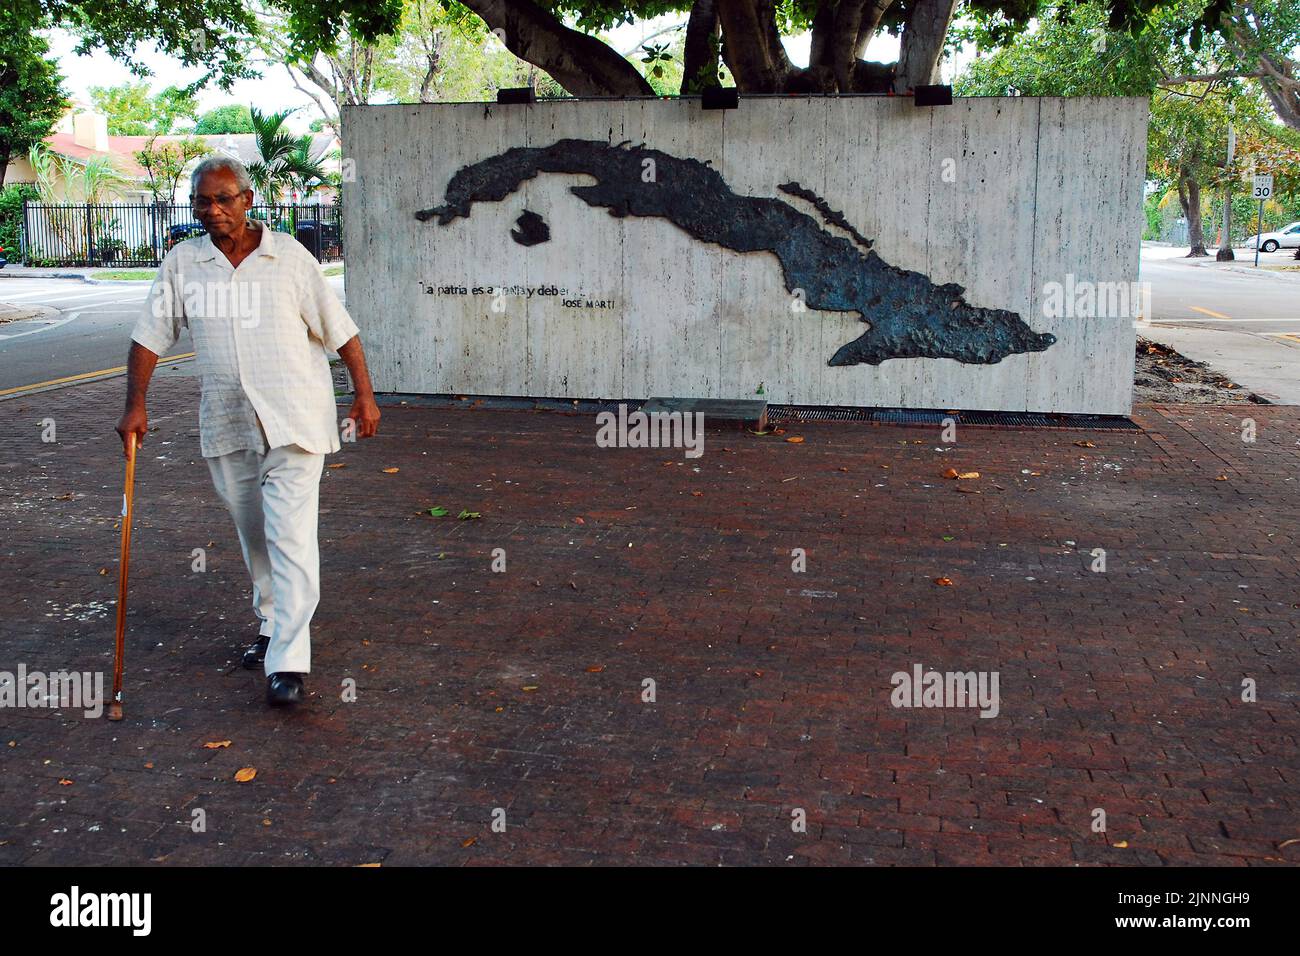 Un homme âgé passe devant le Mémorial de Cuba dans un parc de la Calle Ocho Little Havana, quartier de Miami, où vivent de nombreuses personnes d'origine cubaine Banque D'Images